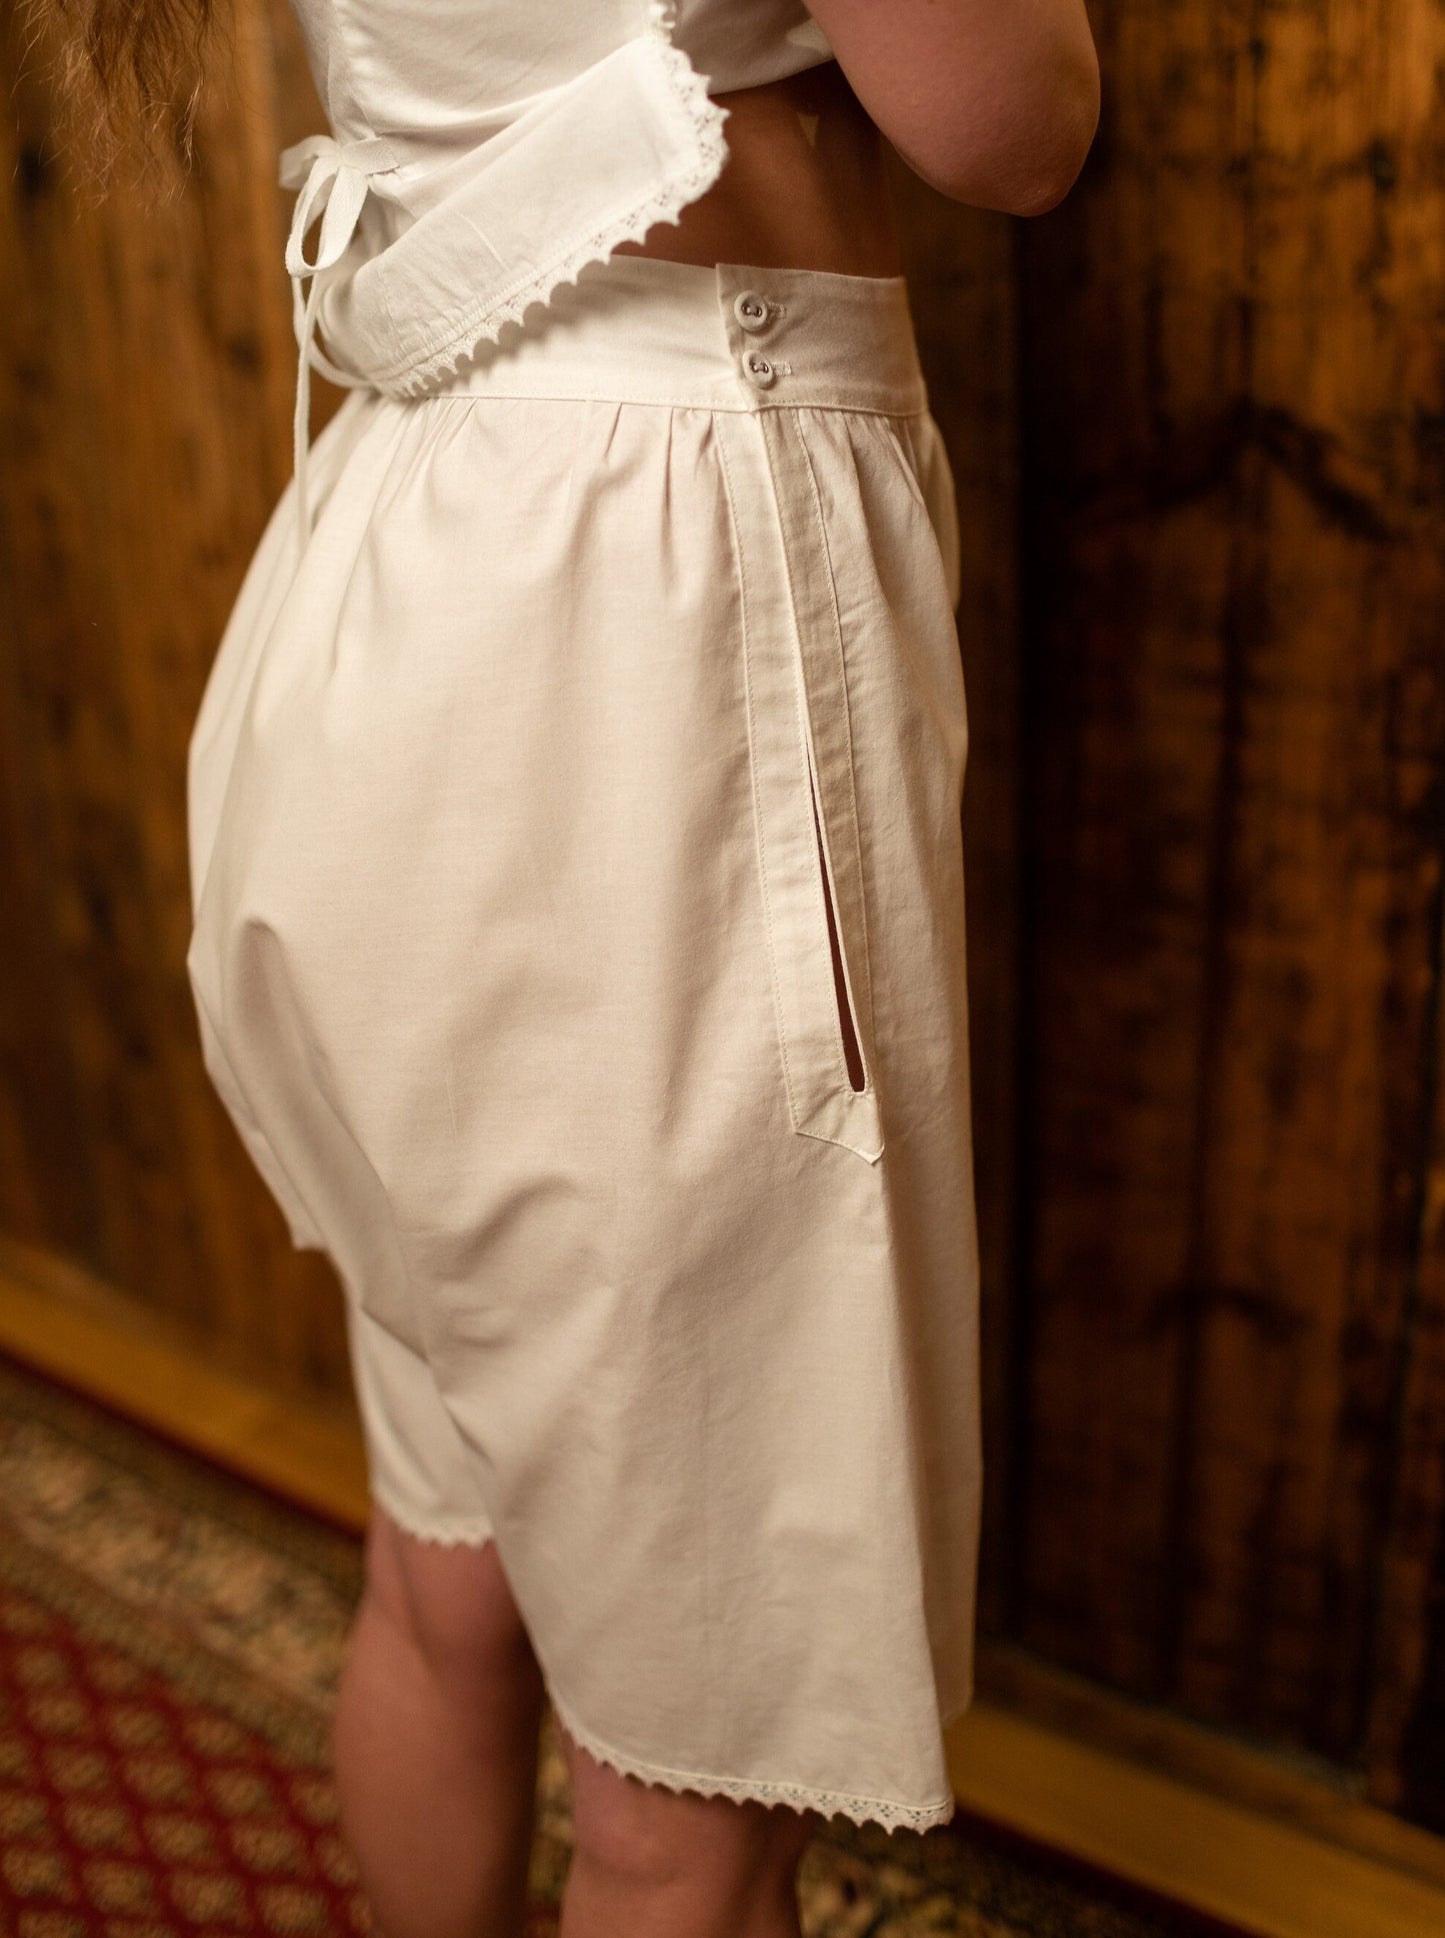 Just Margaret - Victorian Inspired Undies in White Cotton